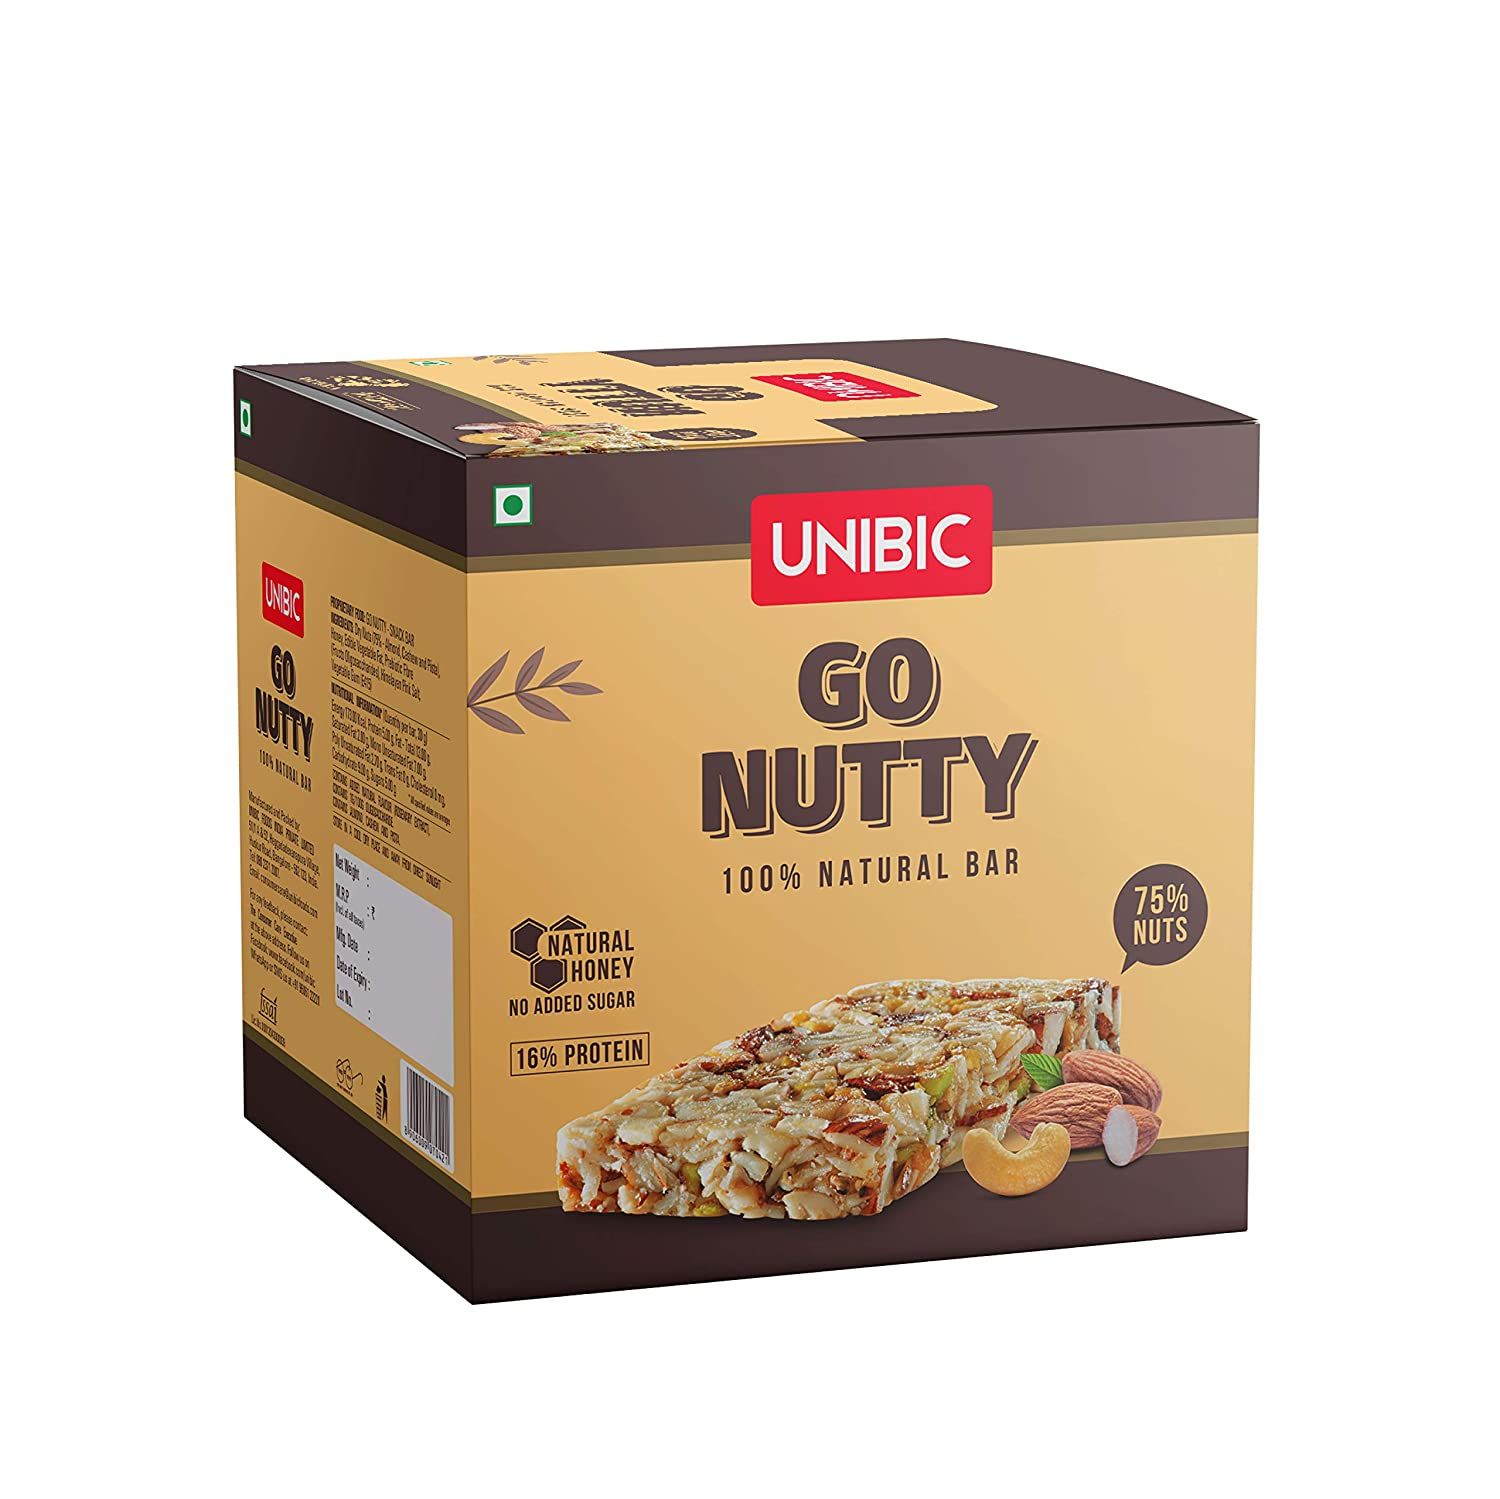 Unibic Go Nutty Bar Image